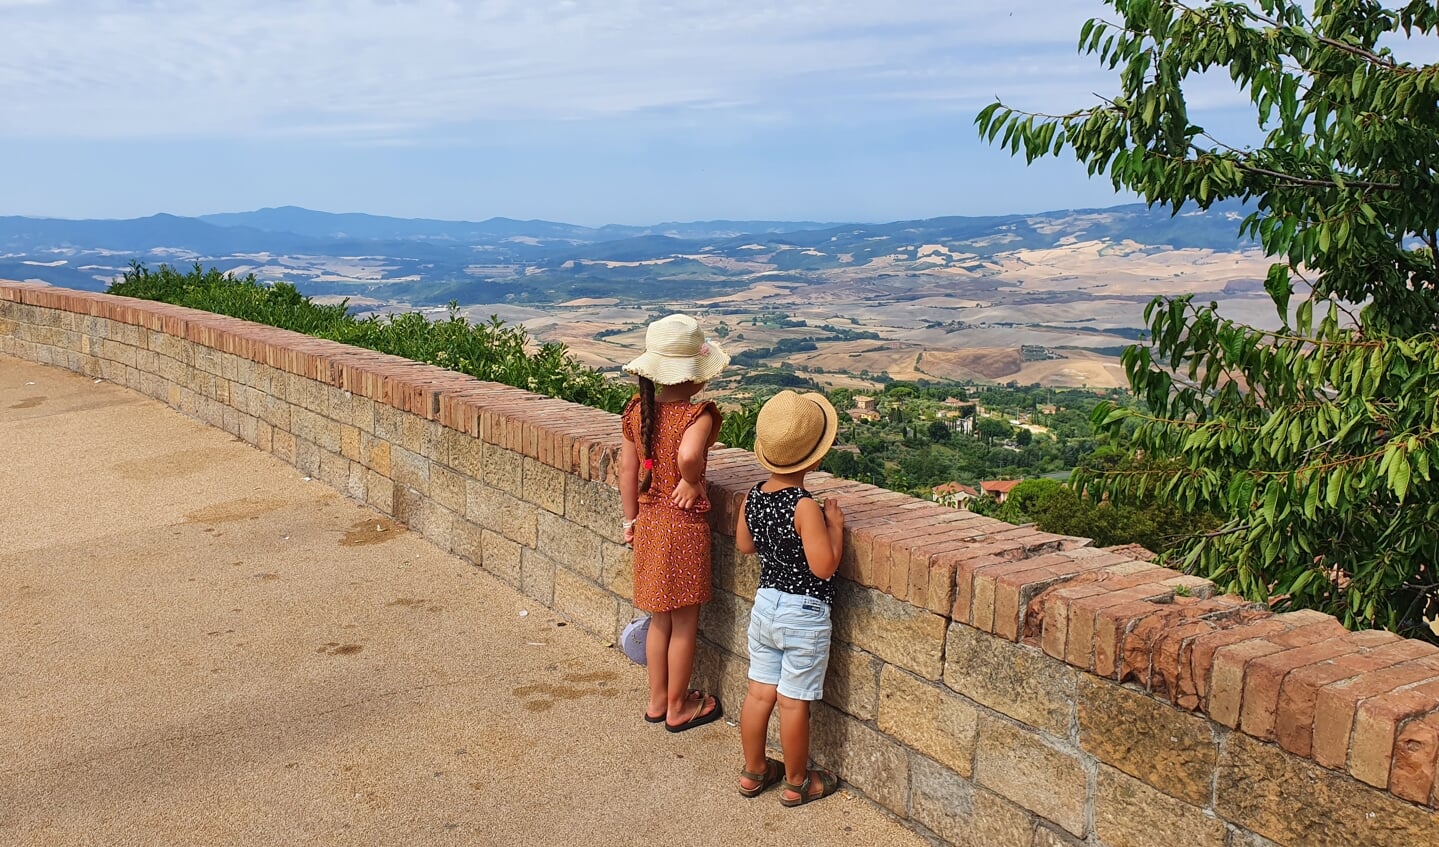 De foto is gemaakt op 21 juli in Italië door mijn man Nick Doornekamp. Na een kronkelig ritje in de auto kwamen wij aan in Volterra, een prachtig stadje bovenop een heuvel. Onze kinderen Sienna en Casper waren blij dat ze hun benen konden strekken en kijken hier uit over het prachtige Toscaanse landschap.